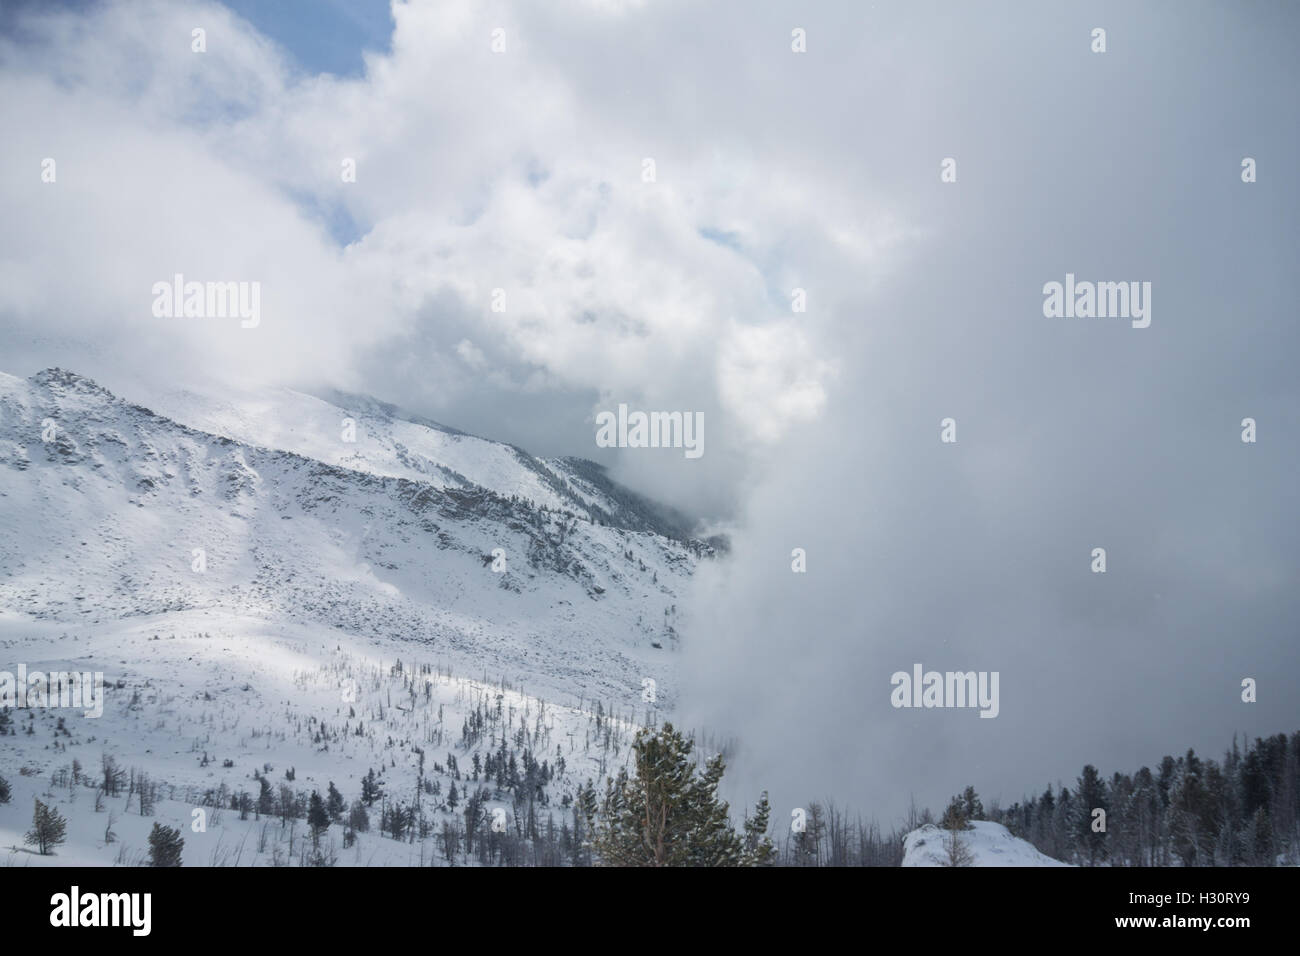 Nuage de neige couvre la chaîne de montagnes et d'arbres Banque D'Images